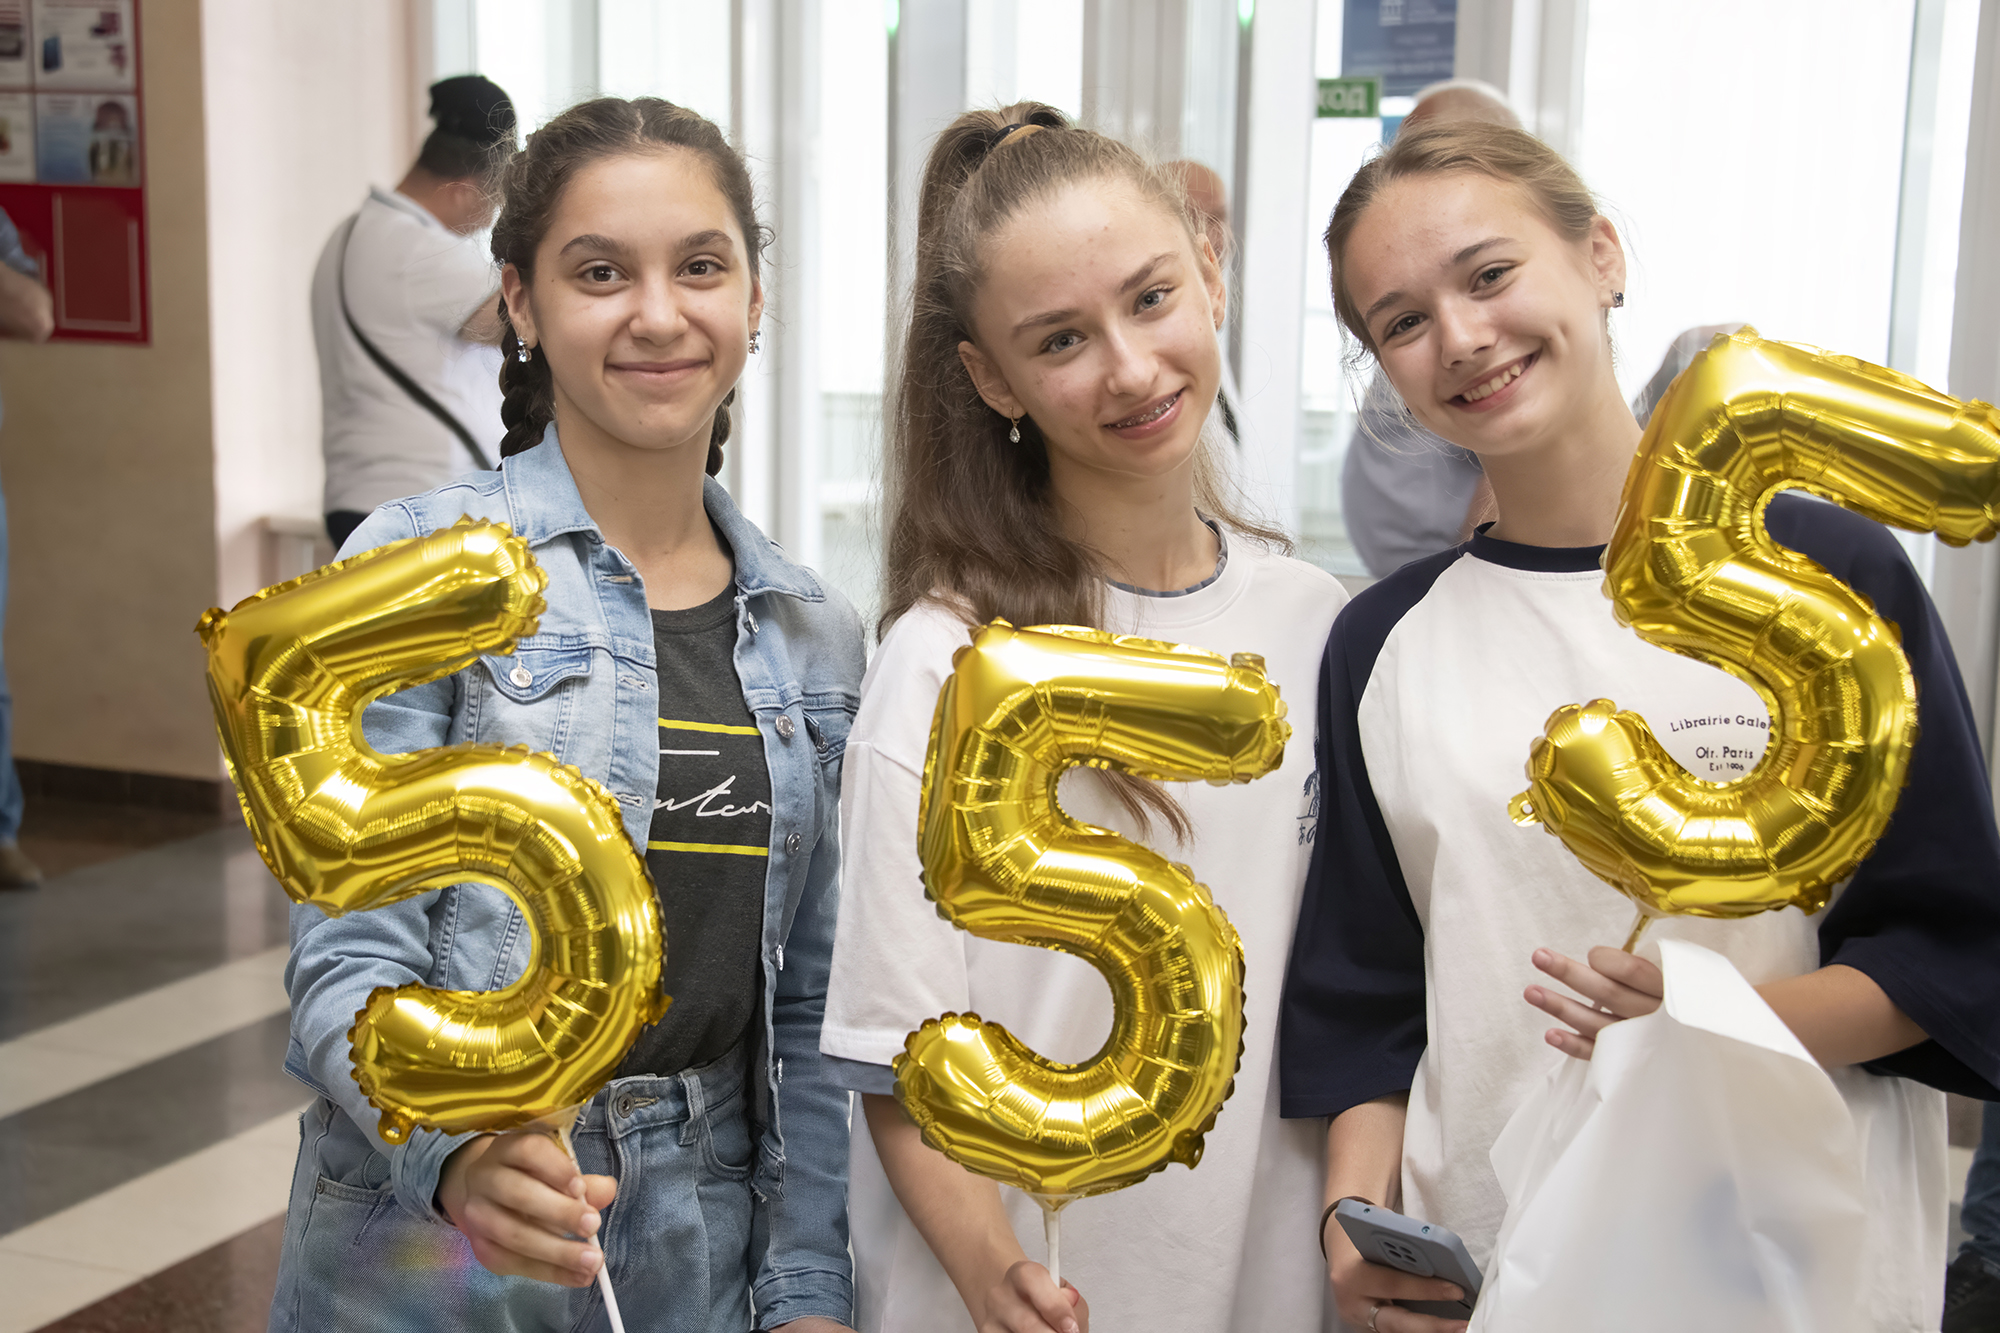 Курская АЭС: отраслевая акция  «Портфель пятёрок Росатома» собрала около 200 школьников г. Курчатова